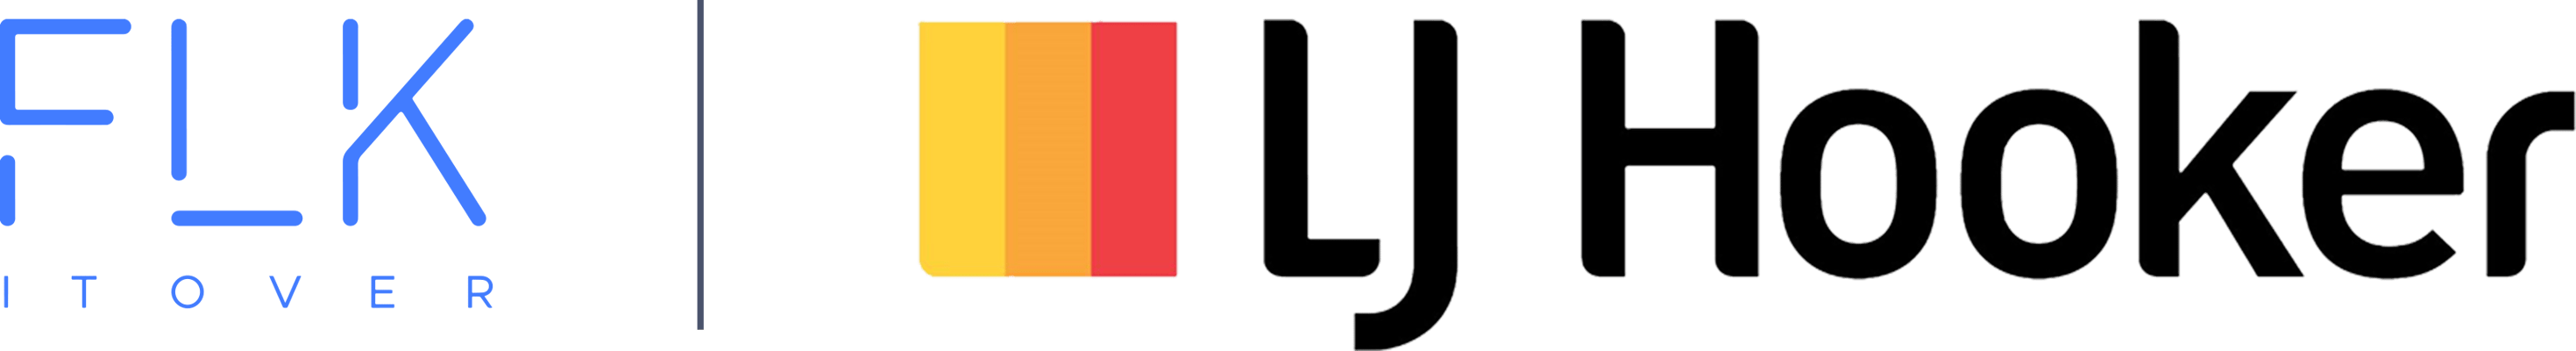 ljhooker_logo header